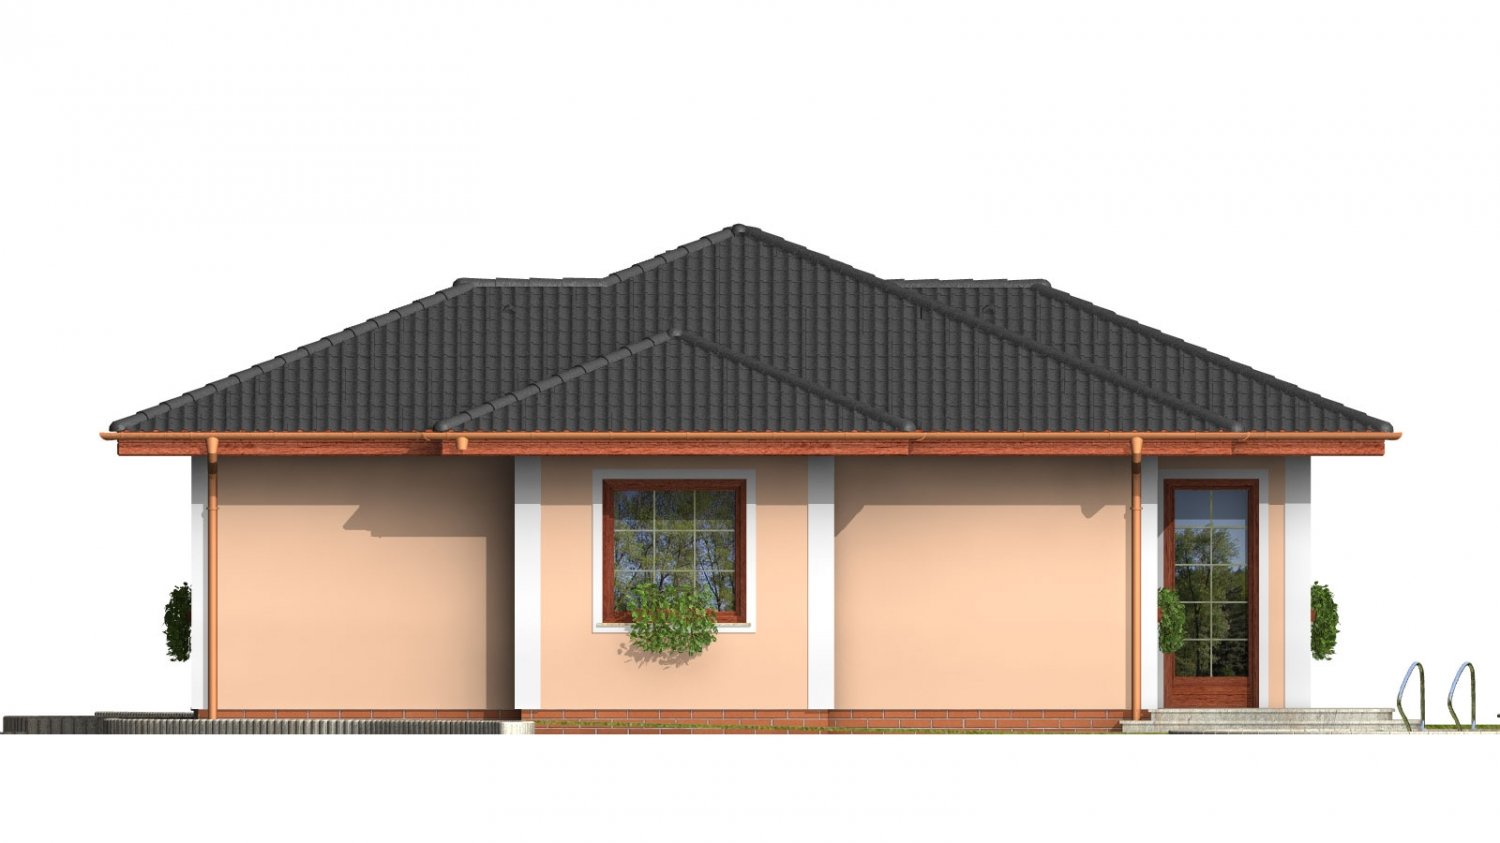 Pohľad 4. - Menší projekt domu s valbovou střechou.